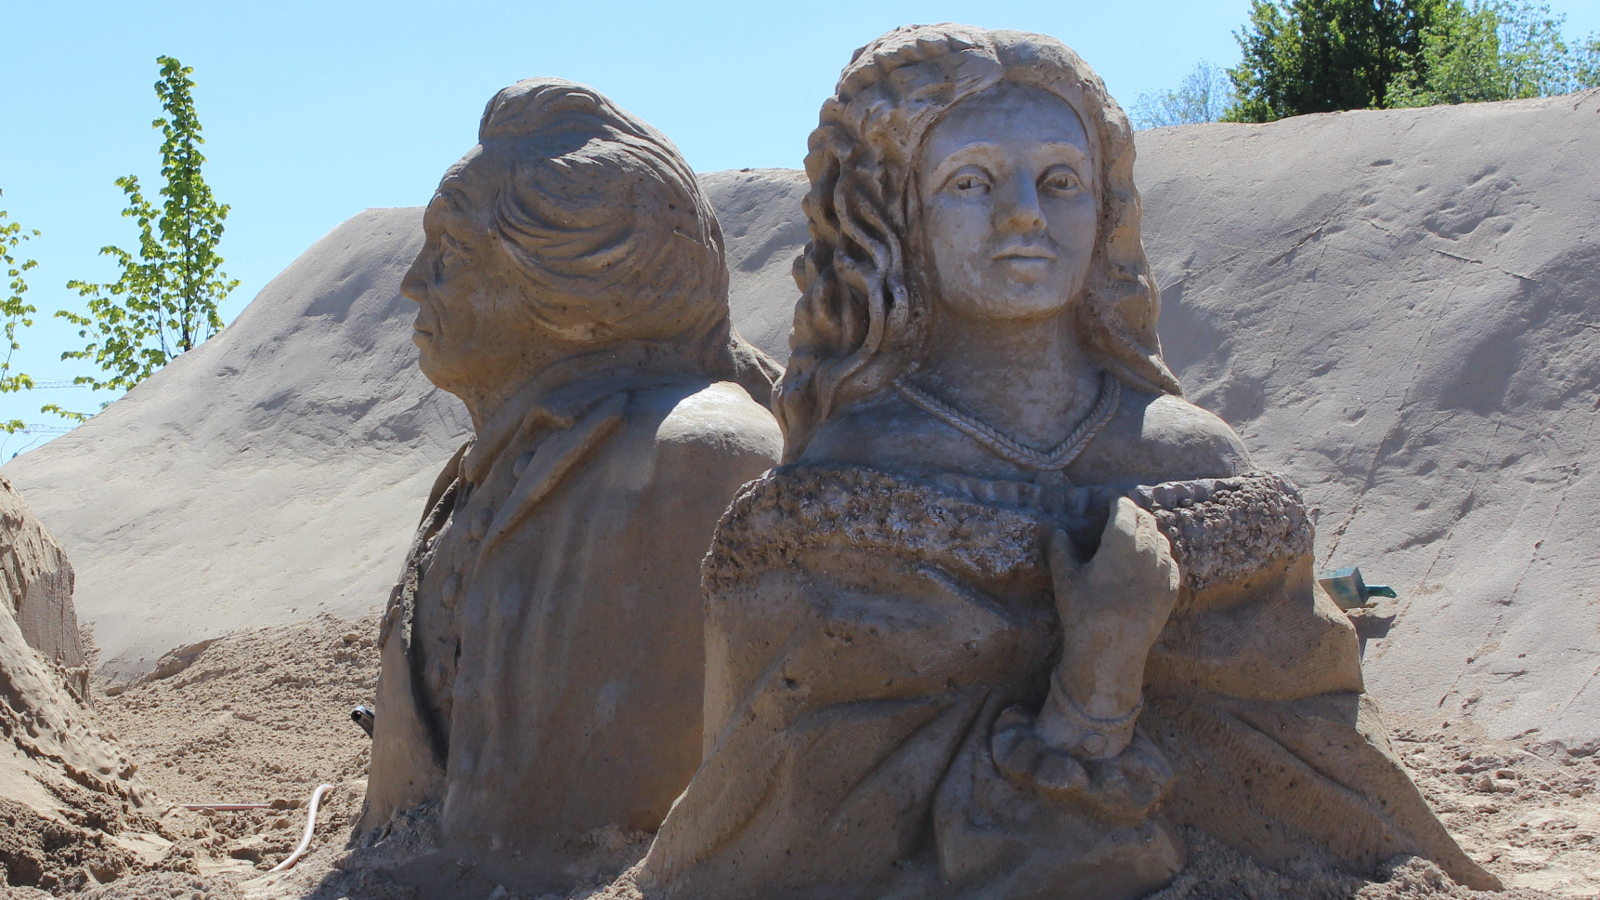 Kuvassa keskellä on kaksi suurehkoa hiekkaveistosta, joissa aatelisasuissa oleva nainen ja mies rintakuvina.  Nainen katsoo suoraan kuvan suuntaan ja mies vasemmalla poispäin.  Veistokset ovat hiekan päällä ja takana vasemmalla näkyy sinistä taivasta.